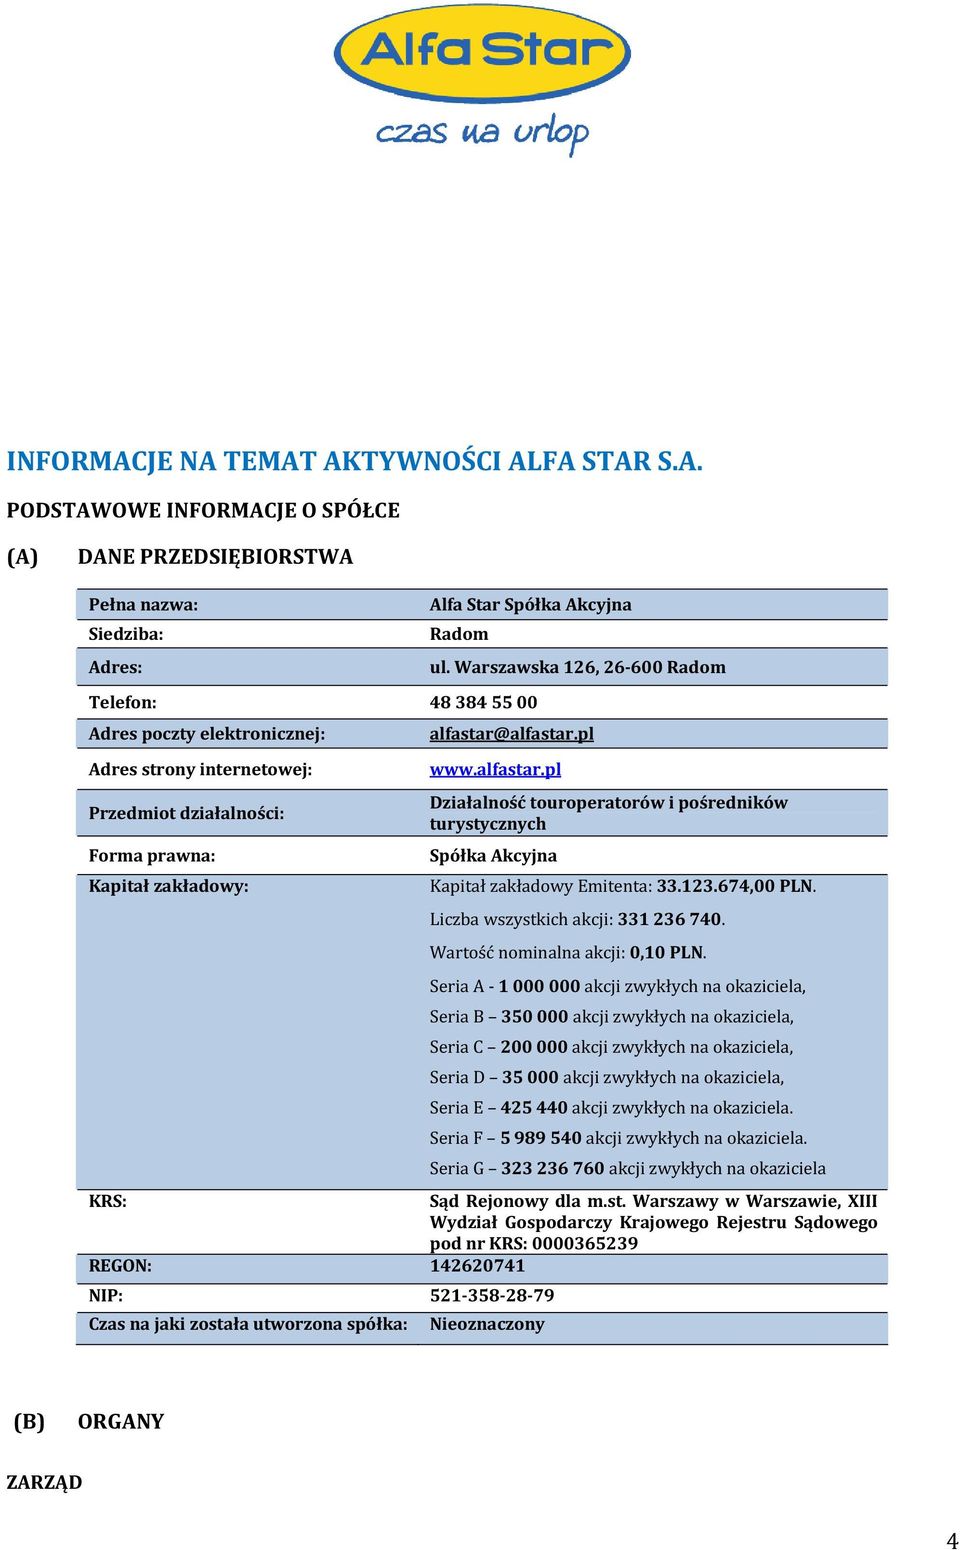 alfastar.pl www.alfastar.pl Działalność touroperatorów i pośredników turystycznych Spółka Akcyjna Kapitał zakładowy Emitenta: 33.123.674,00 PLN. Liczba wszystkich akcji: 331 236 740.